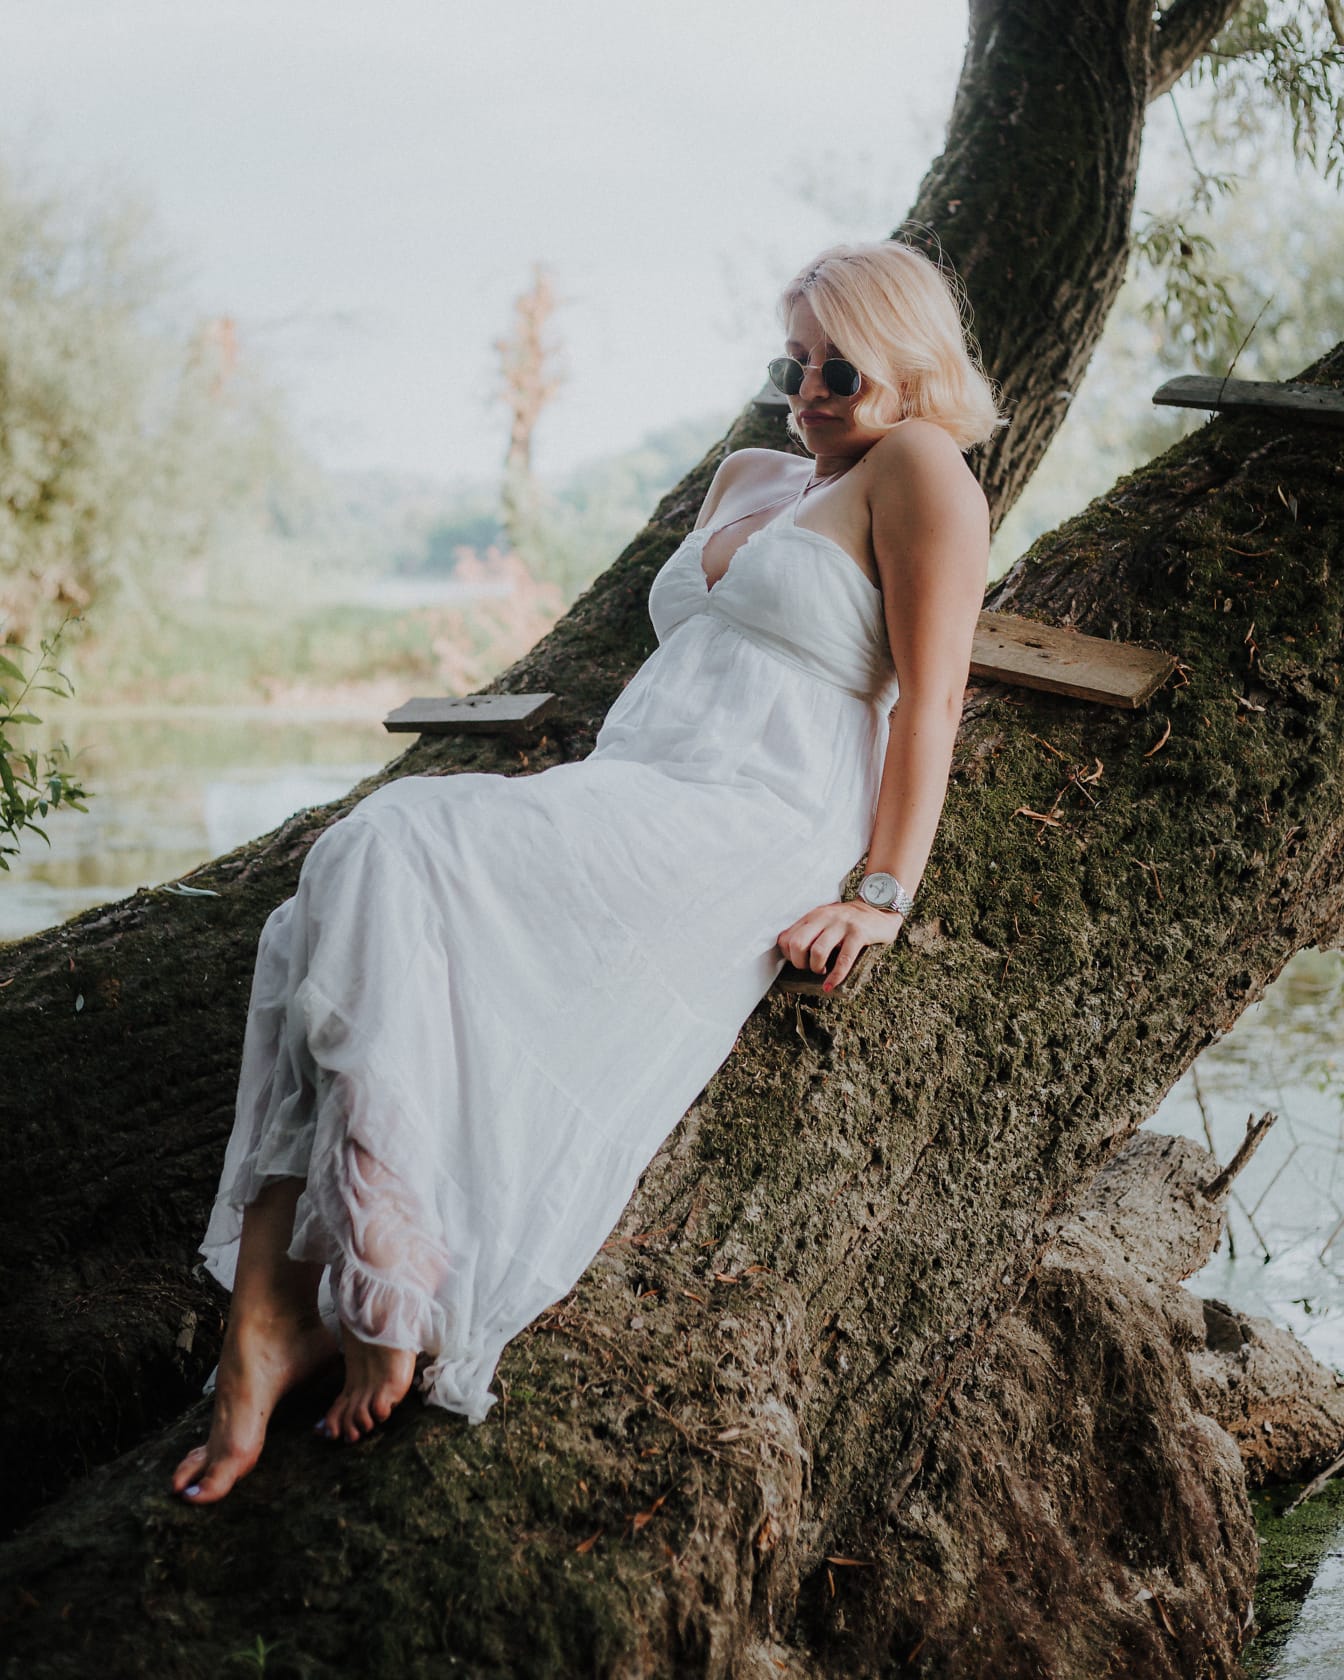 Wunderschöne barfüßige verführerische Frau in einem weißen Kleid auf einem Baum liegend